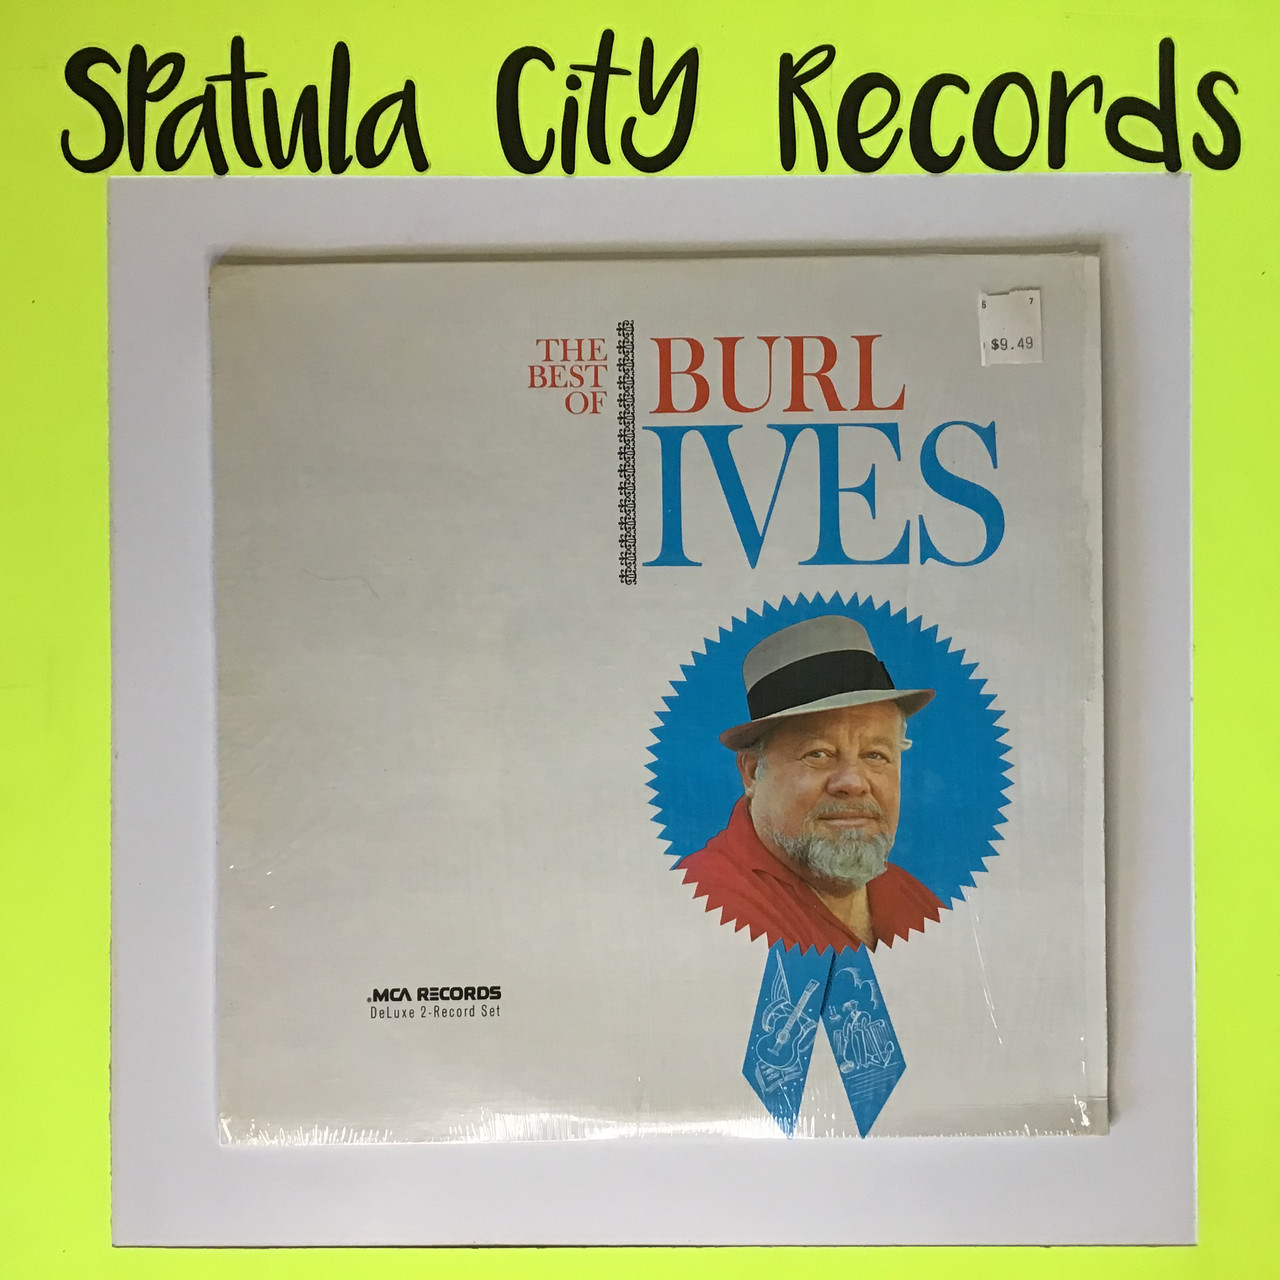 Burl Ives - The Best of Burl Ives - double vinyl record album LP